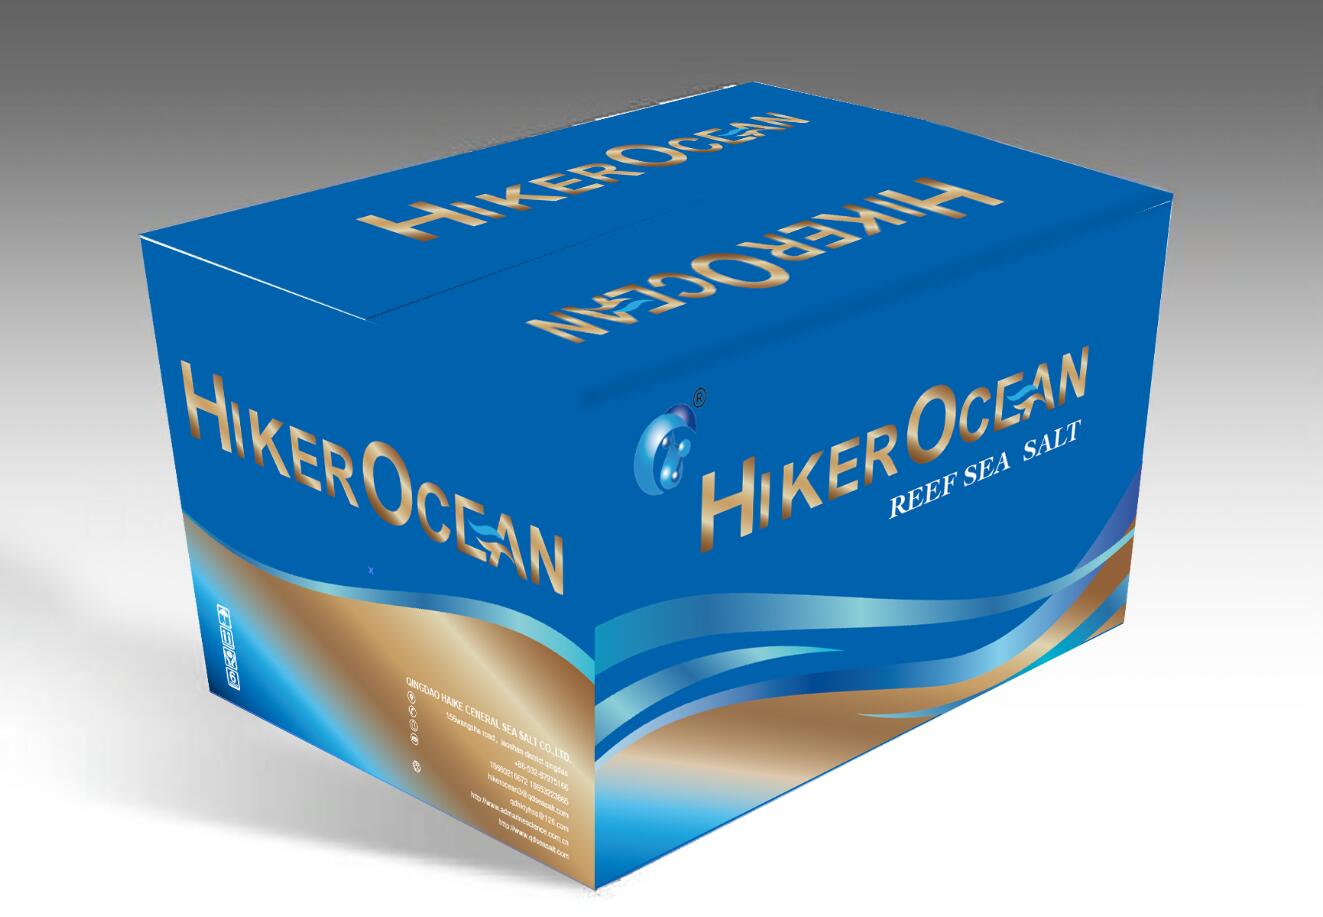 Hiker Ocean LPS Reef Salt